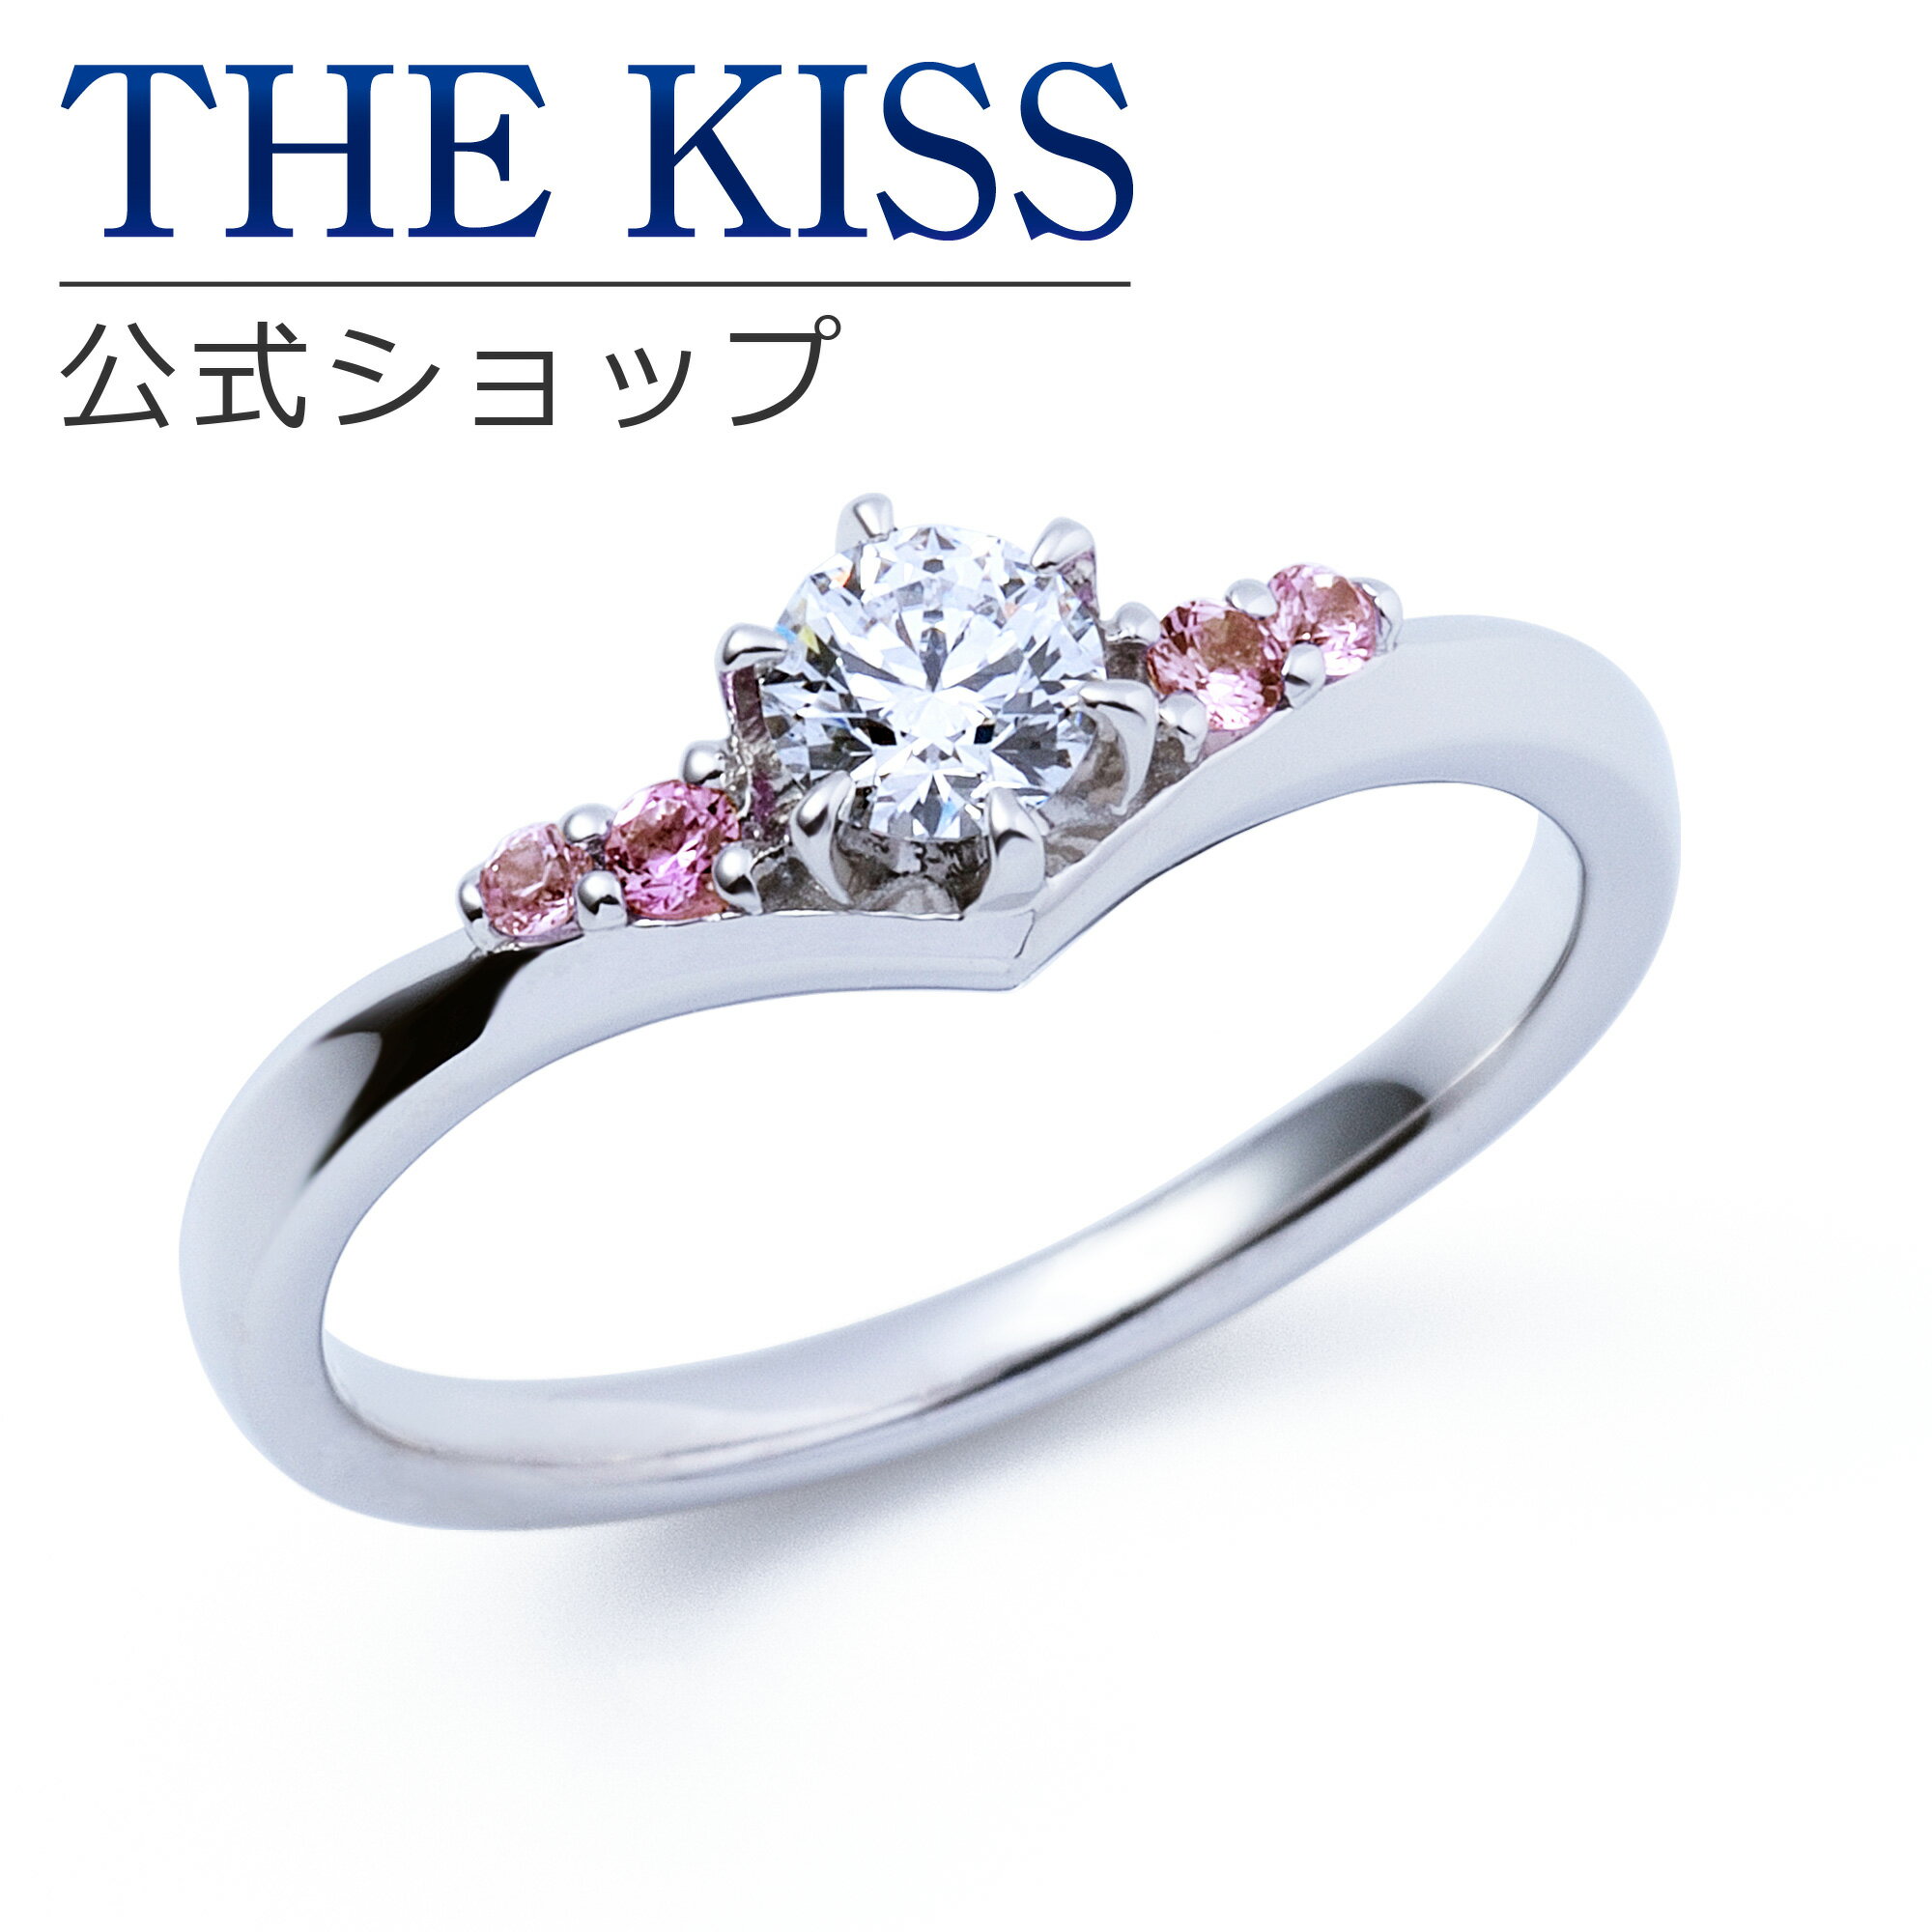 【ラッピング無料】【刻印無料】【THE KISS Anniversary】THE KISS 公式ショップ プラチナ エンゲージリング 婚約指輪 結婚指輪 ブライダルリング プロポーズ THE KISS ザキッス 指輪 6062103220 シンプル ブライダル 鑑定書付 ダイヤモンド【0.20ct F VS2 EX】